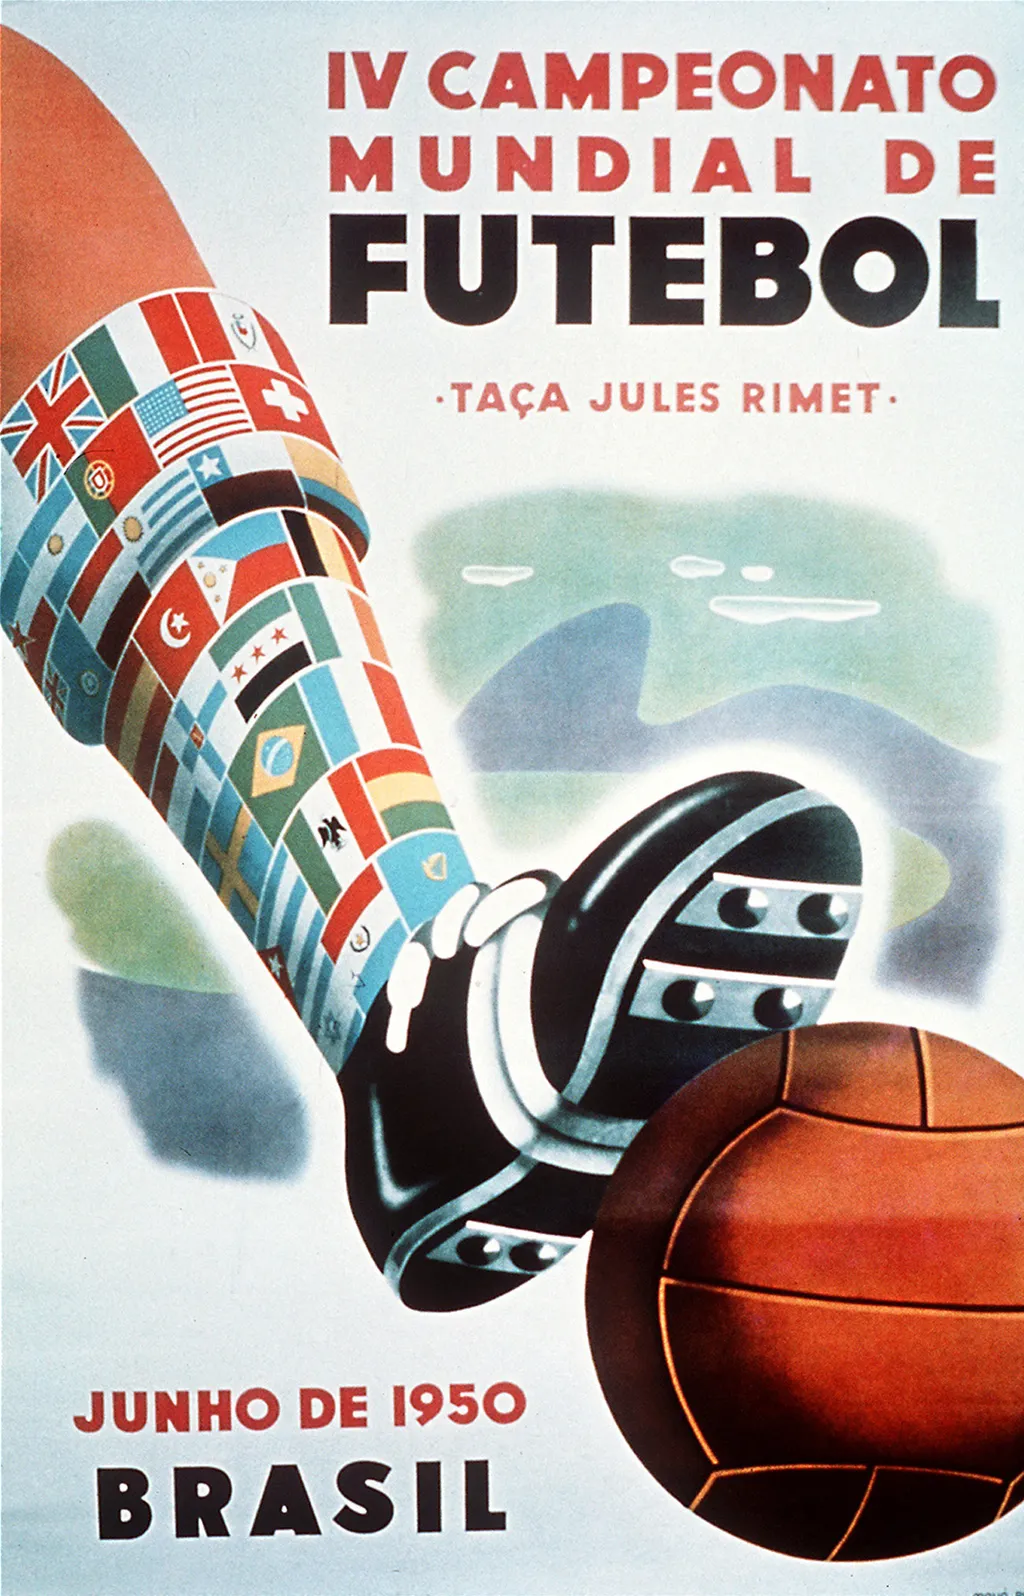 Labdarúgó-világbajnokság, labdarúgóvébé, futballvébé, labdarúgás, hivatalos plakát, poszter, 1950, Brazília 